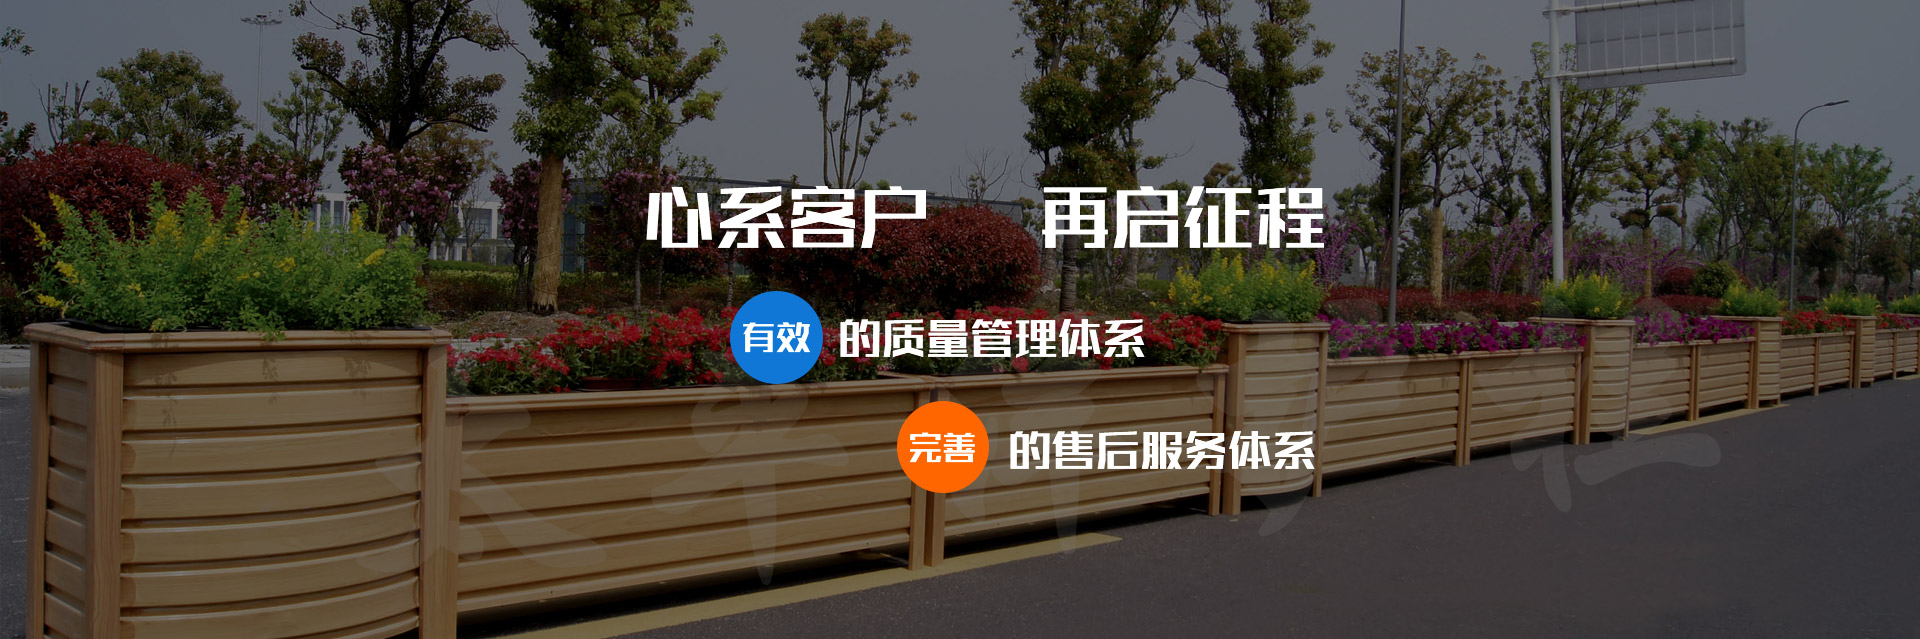 关于当前产品k2网投20120·(中国)官方网站的成功案例等相关图片